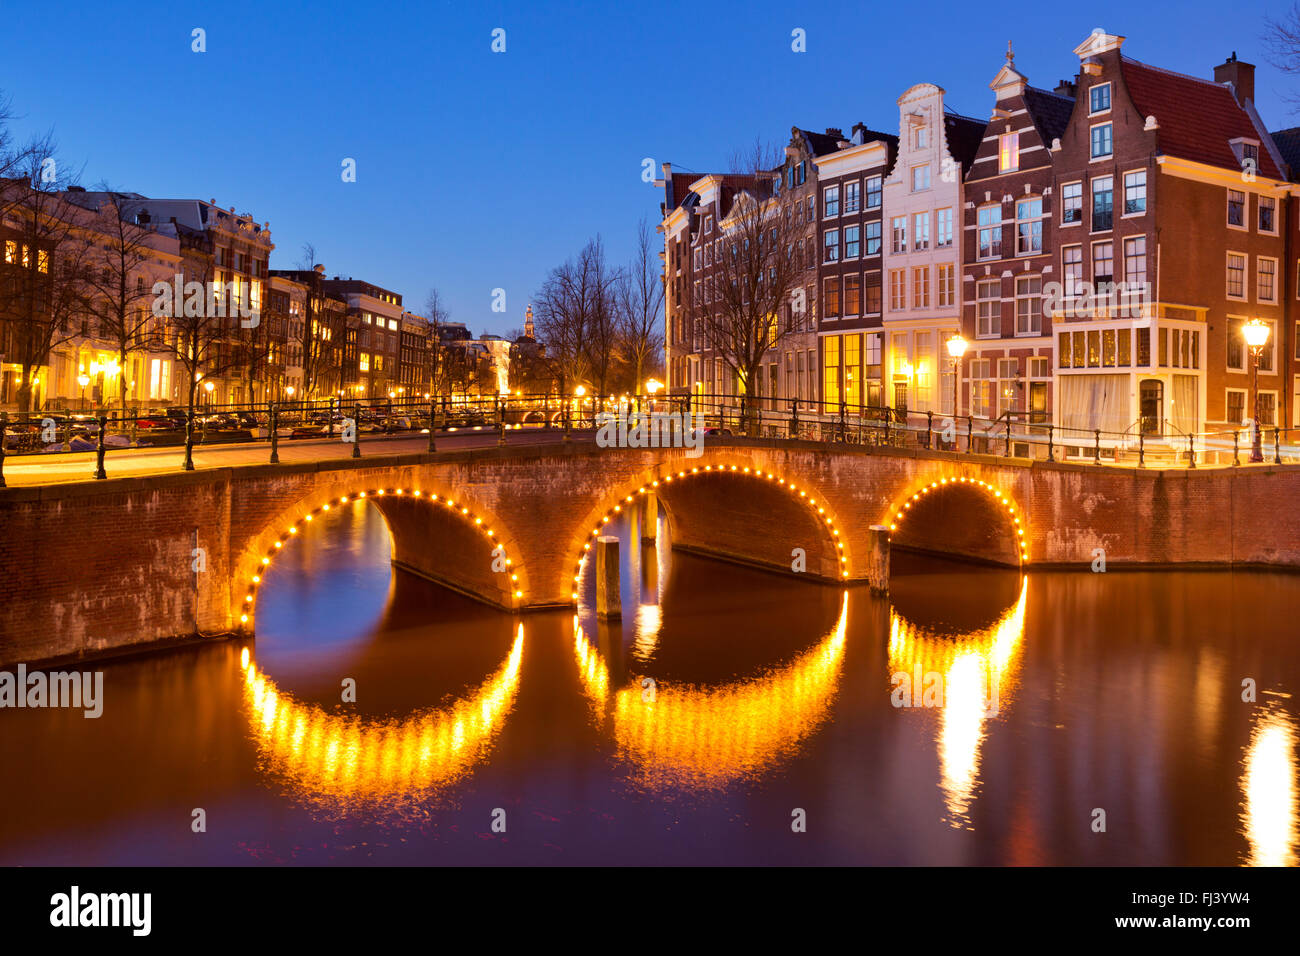 Eine Brücke über einen Kanal in der Stadt Amsterdam, die Niederlande in der Nacht. Stockfoto